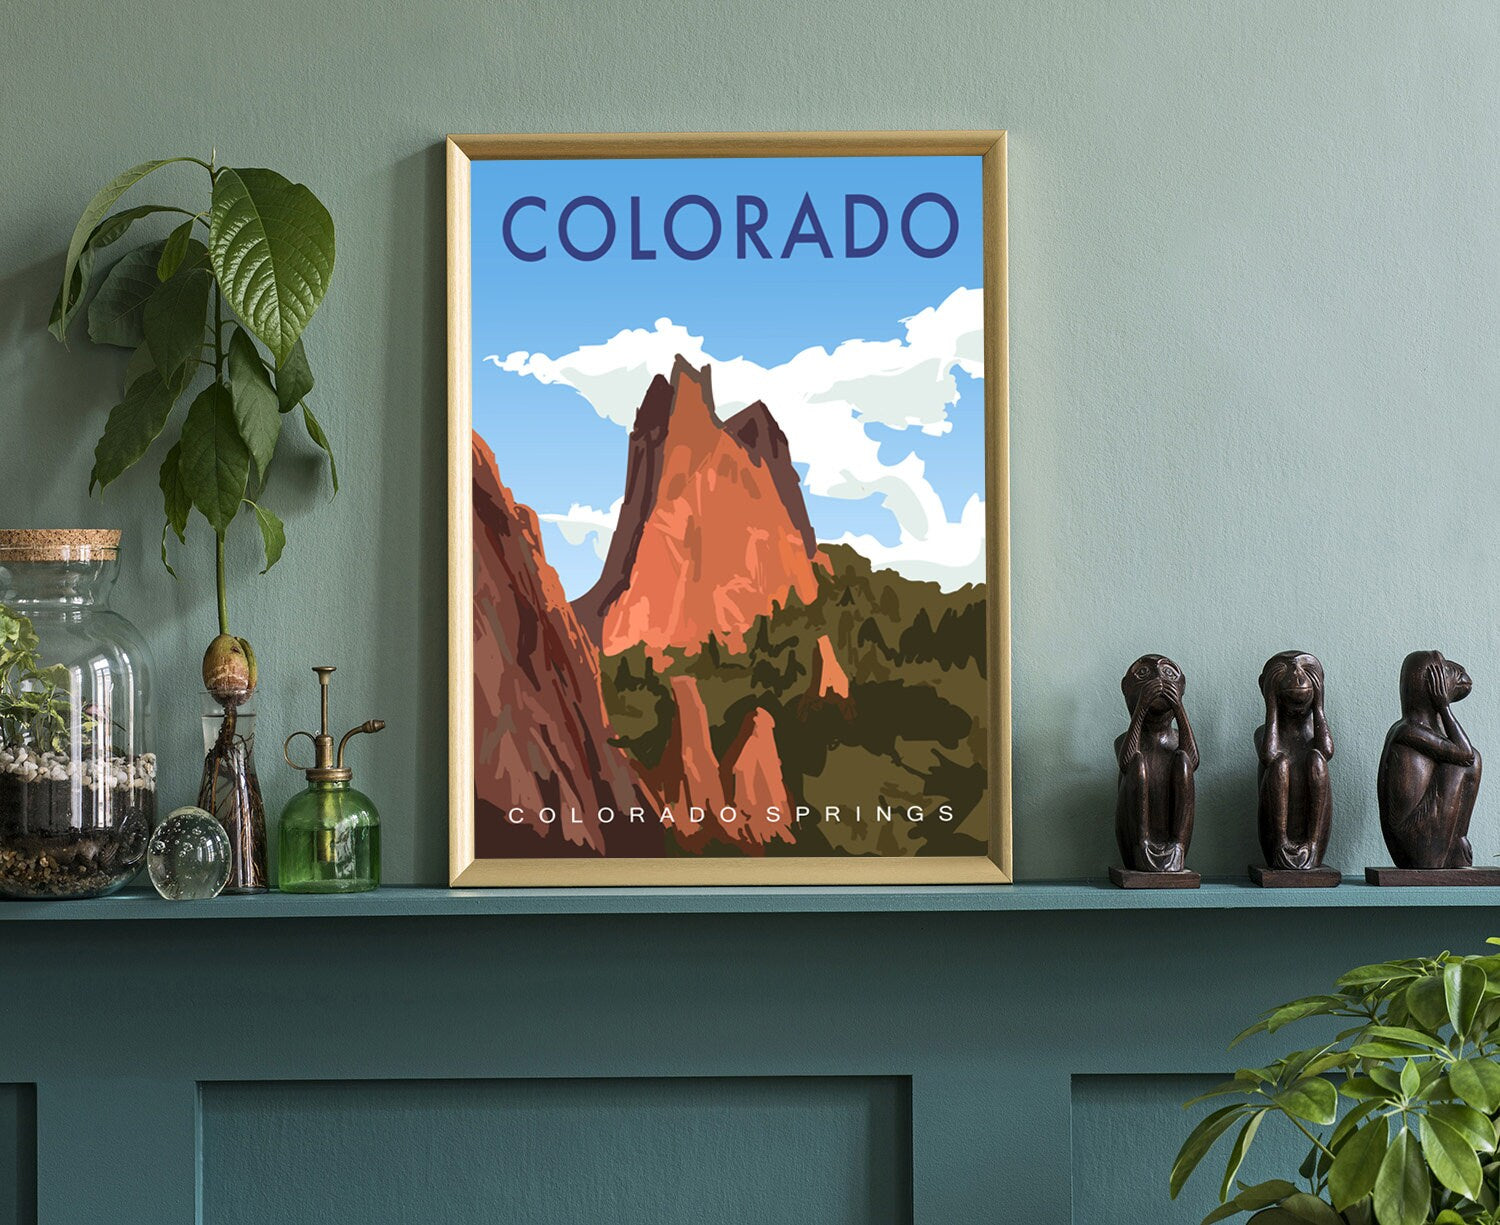 Colorado Vintage Rustic Poster Print